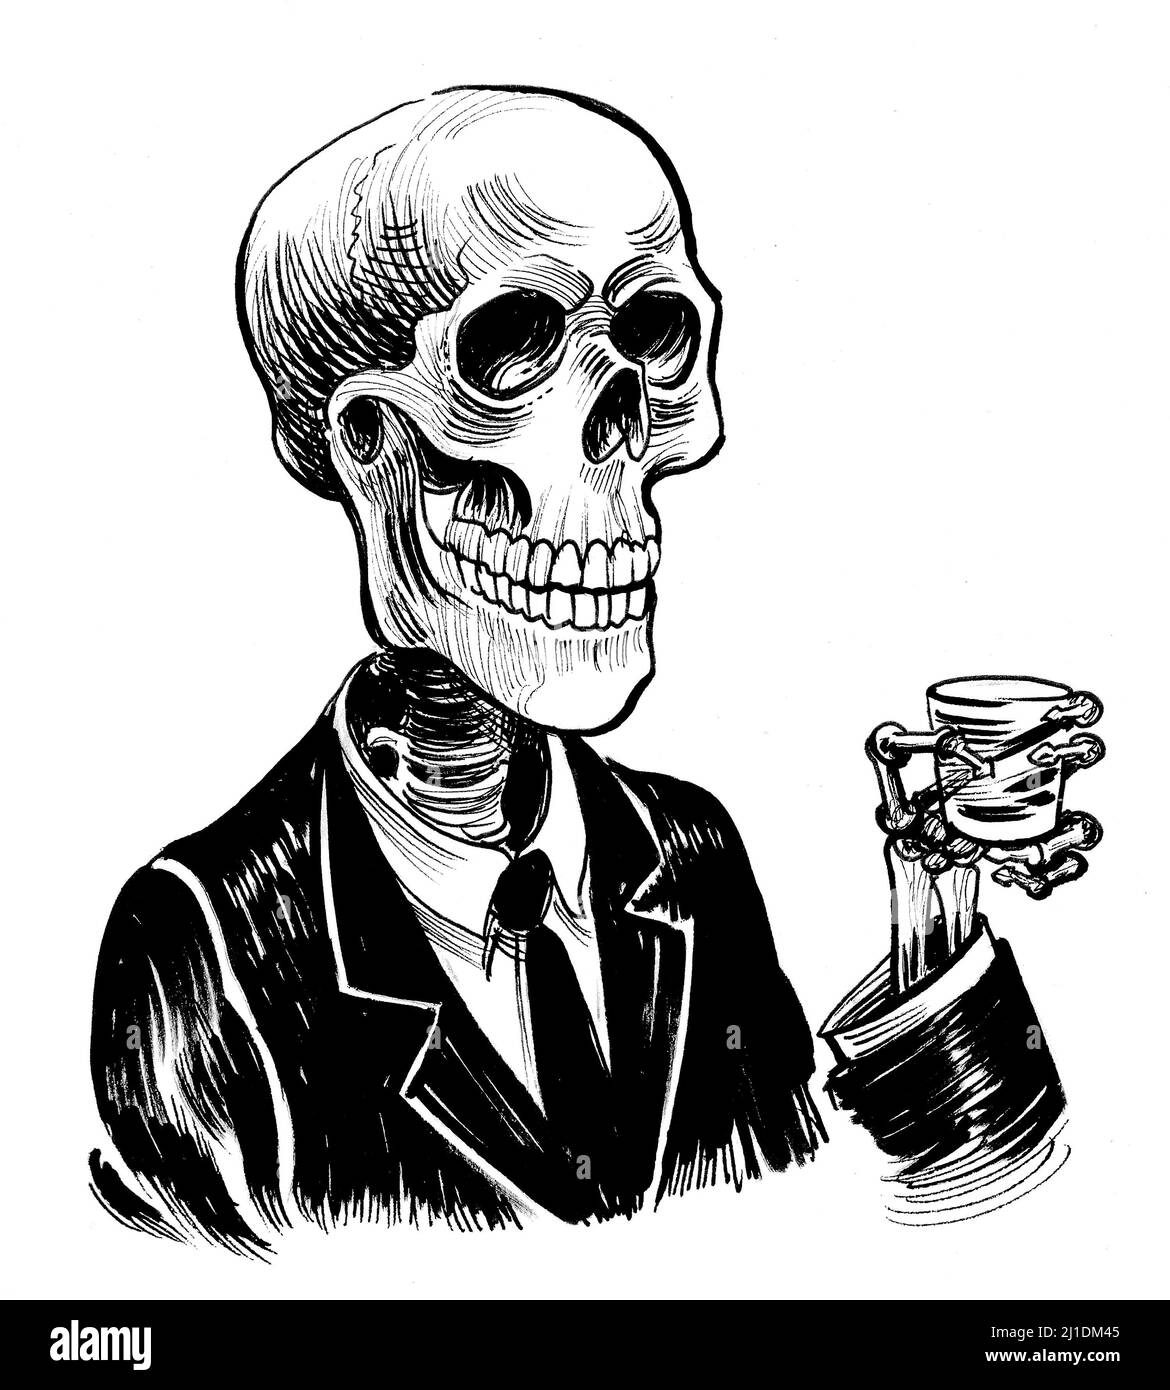 Squelette humain avec un verre de whisky. Dessin noir et blanc Banque D'Images